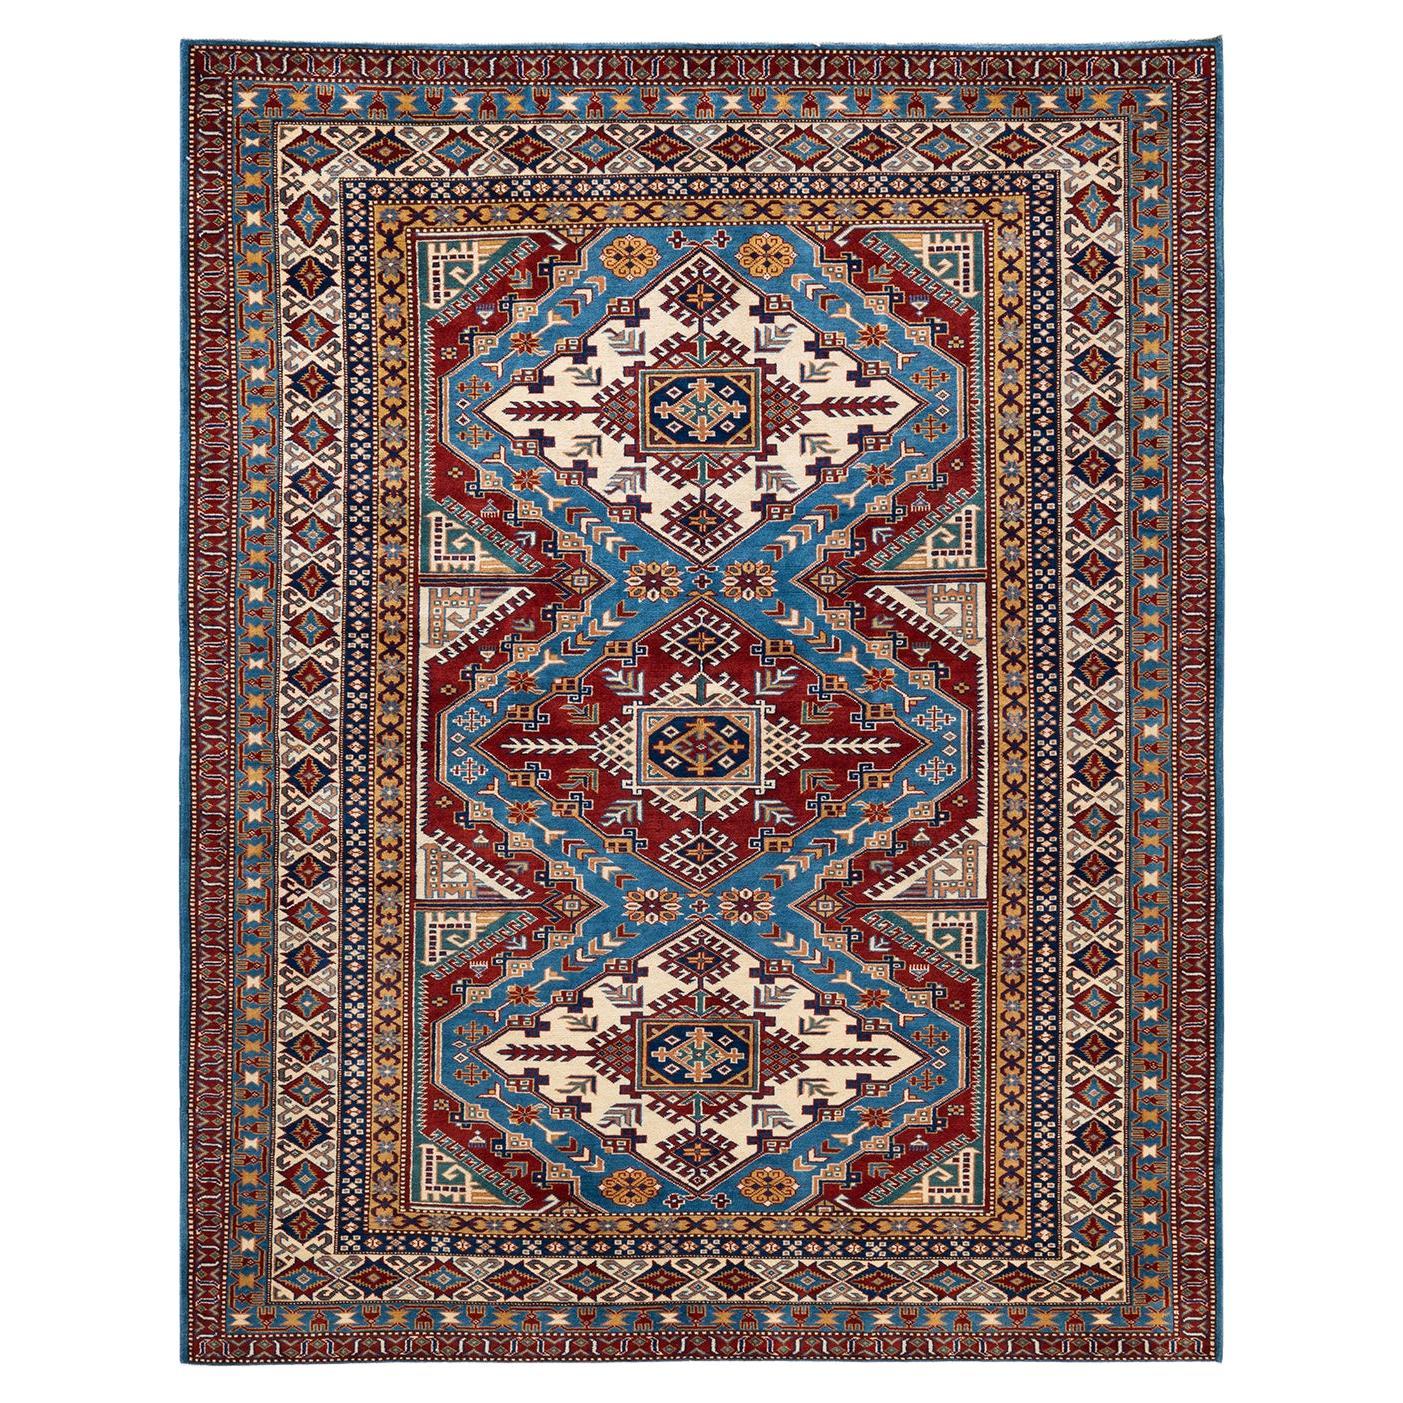 Einzigartiger handgeknüpfter blauer Teppich im böhmischen Stammesstil, 2,13 m x 2,13 m, Unikat